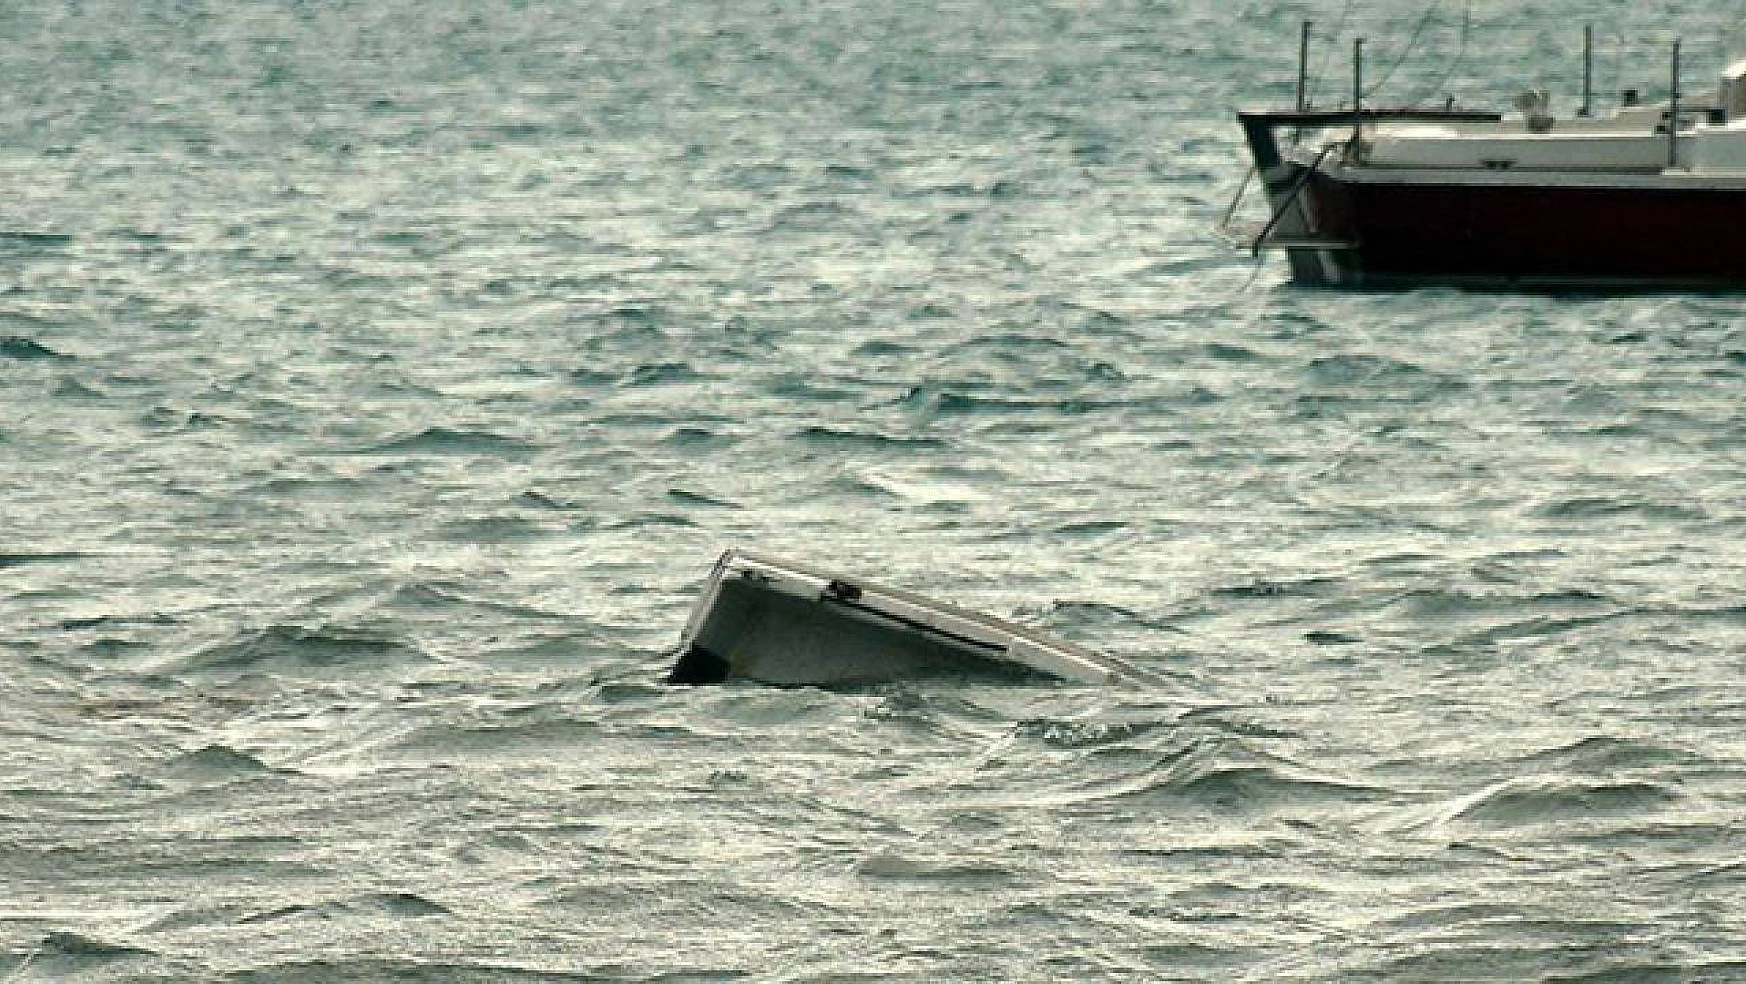 Göçmen teknesi battı: 13 ölü, 27 kayıp